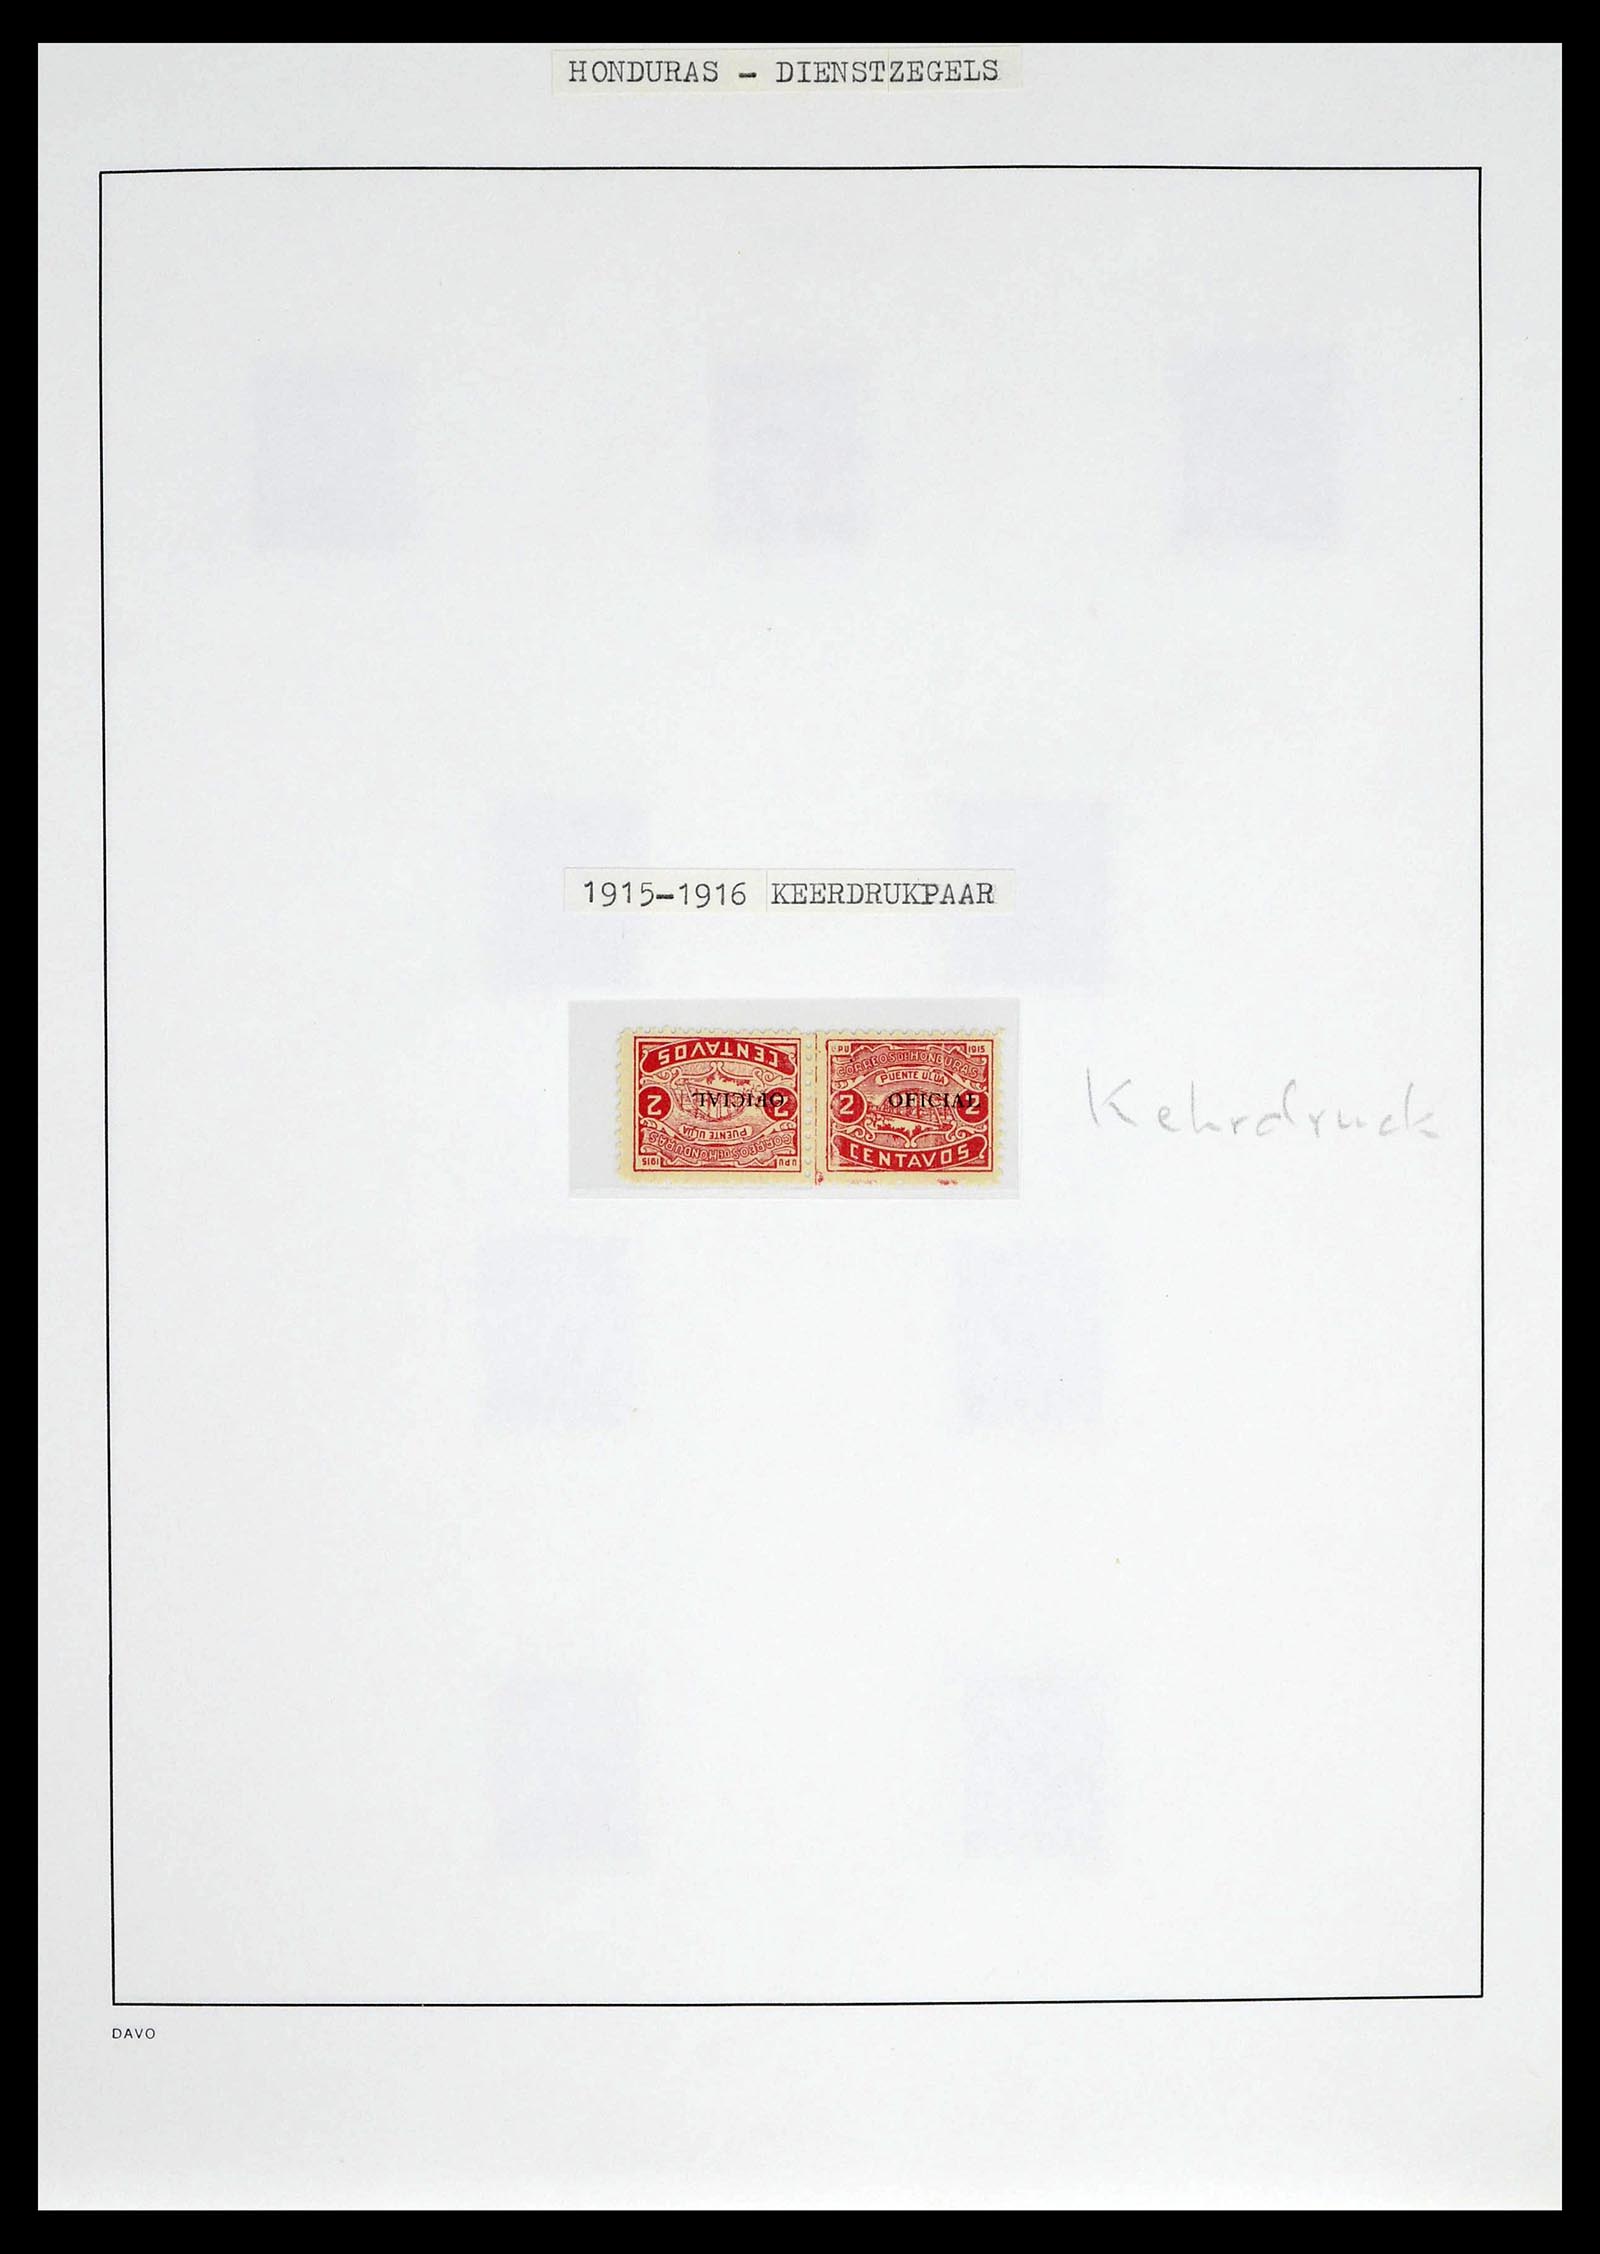 39404 0016 - Postzegelverzameling 39404 Honduras dienstzegels 1890-1974.